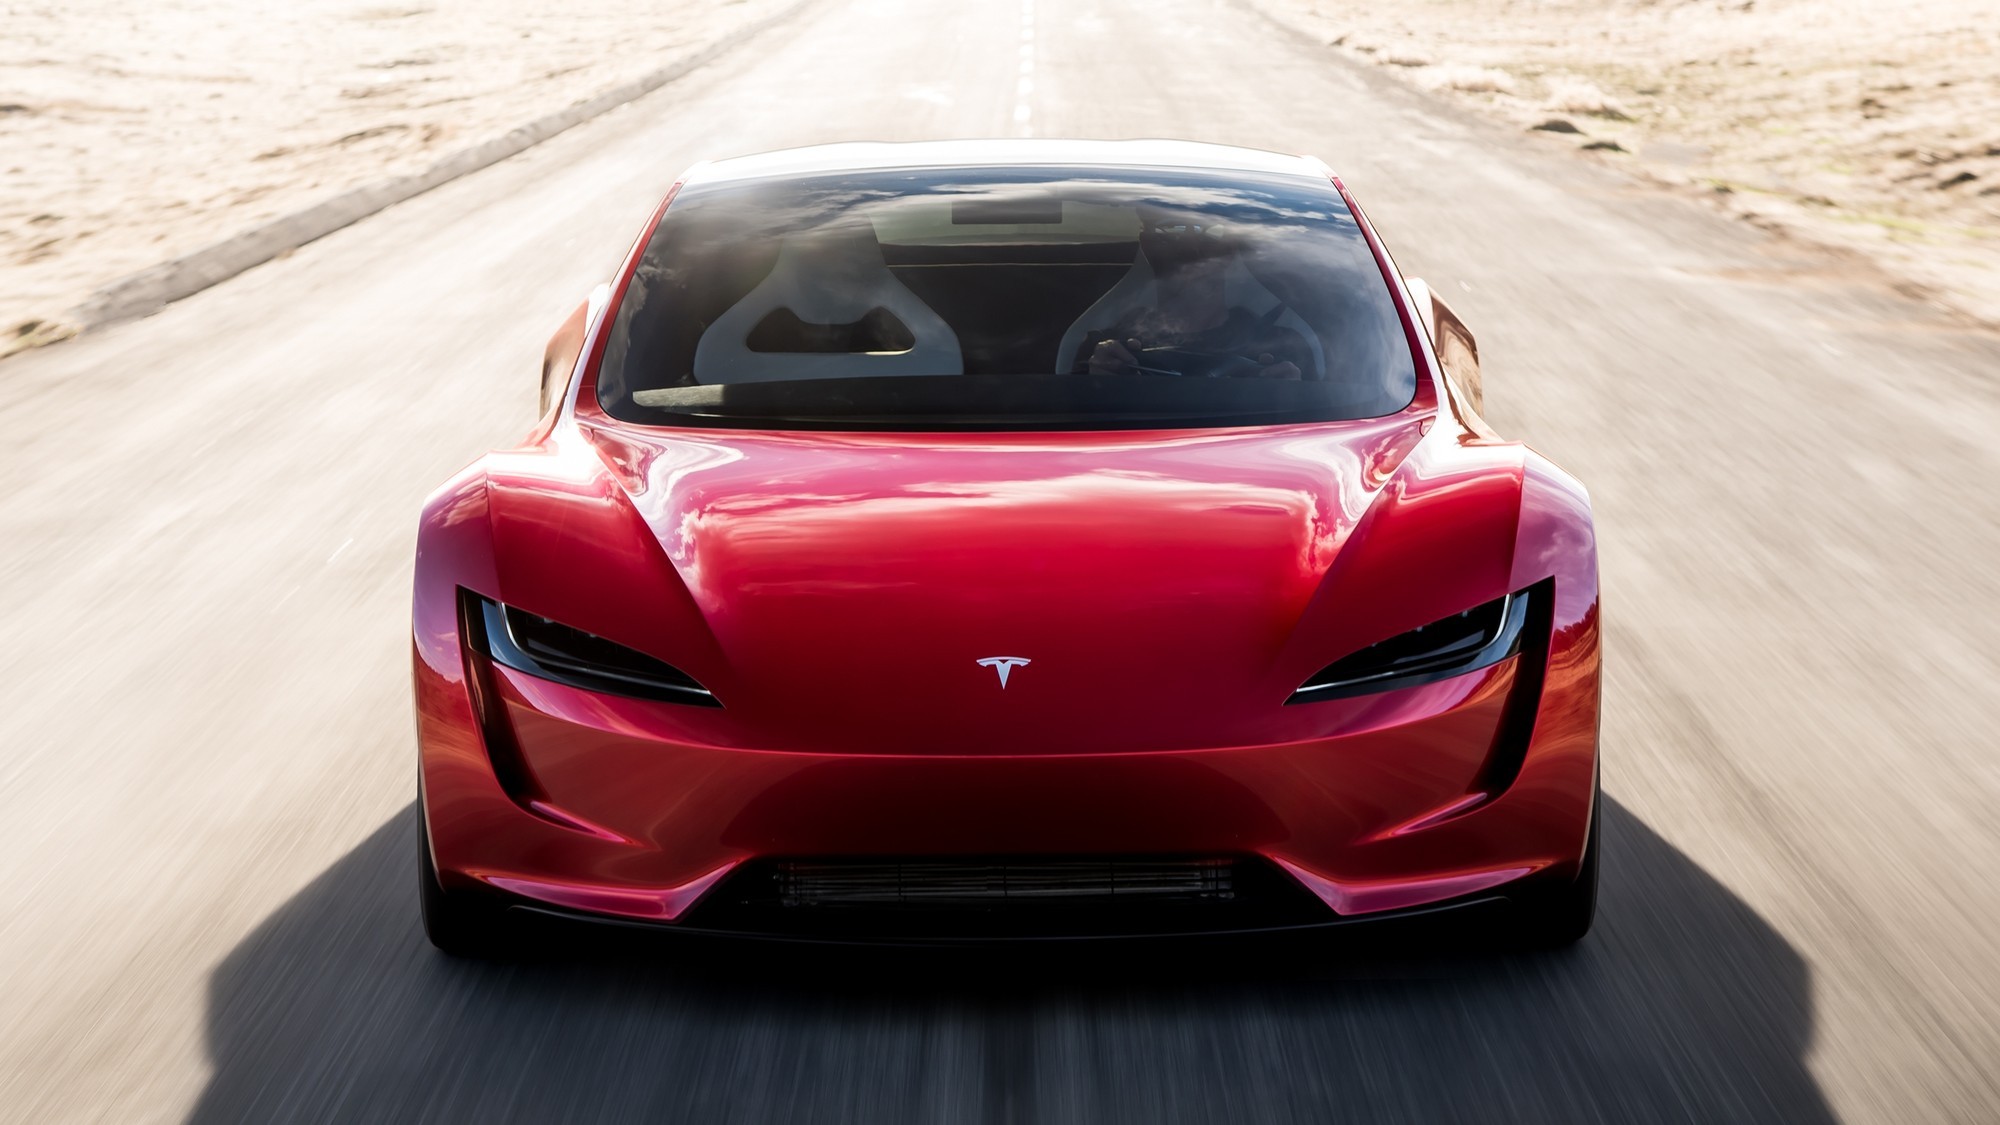 Идёт на взлёт: Илон Маск пообещал снабдить новый Tesla Roadster ракетными технологиями